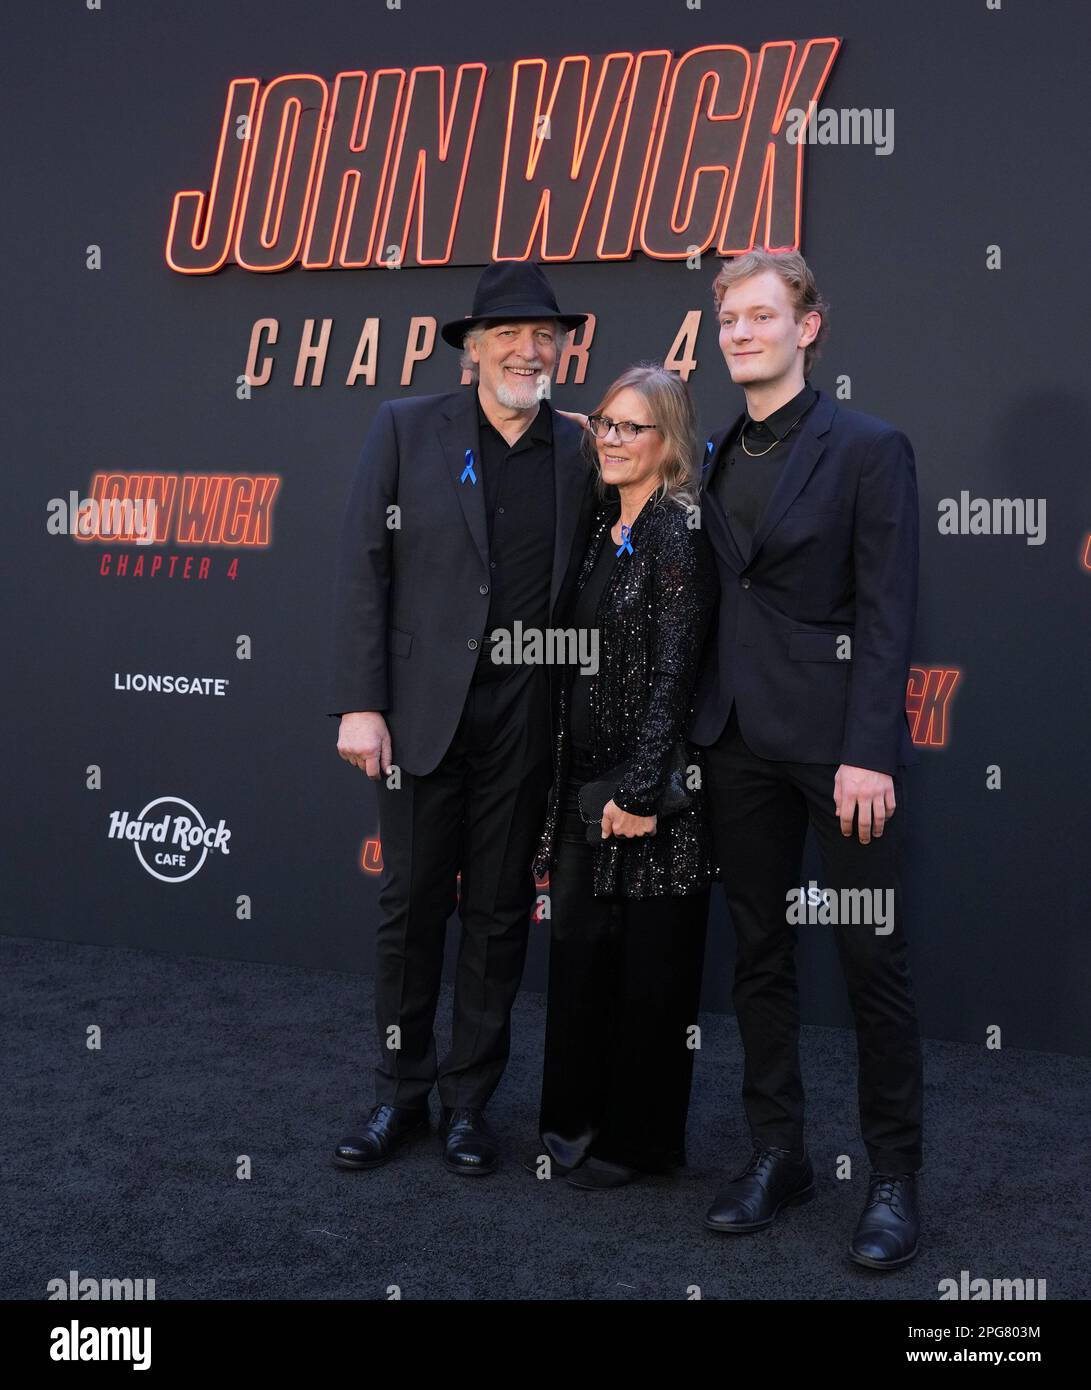 John Wick 4': Clancy Brown entra para o elenco da sequência - CinePOP